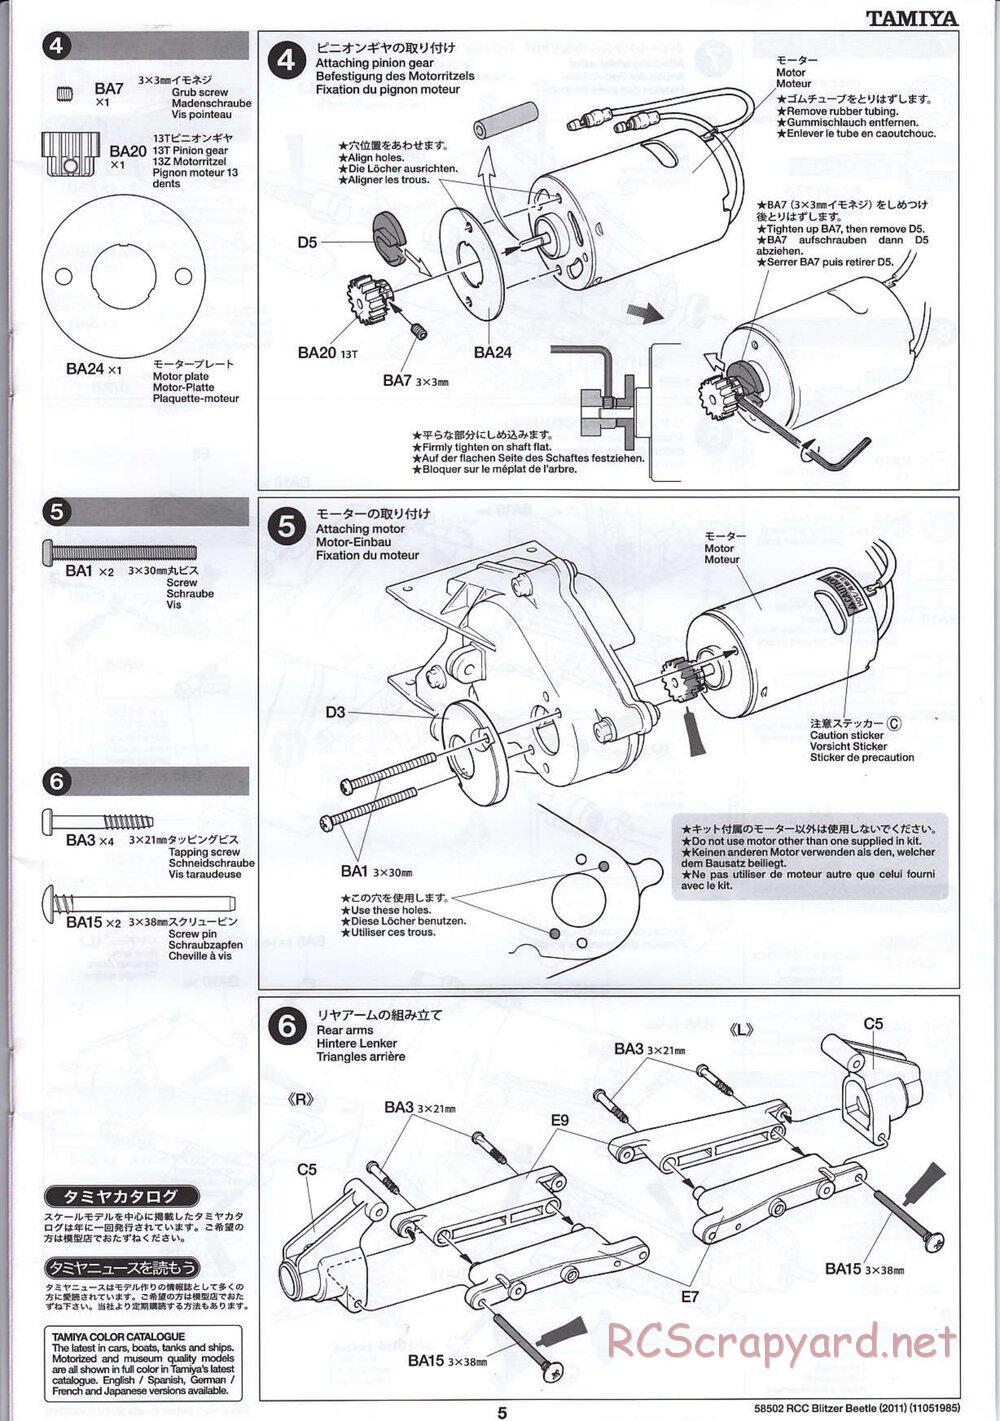 Tamiya - Blitzer Beetle 2011 - FAL Chassis - Manual - Page 5